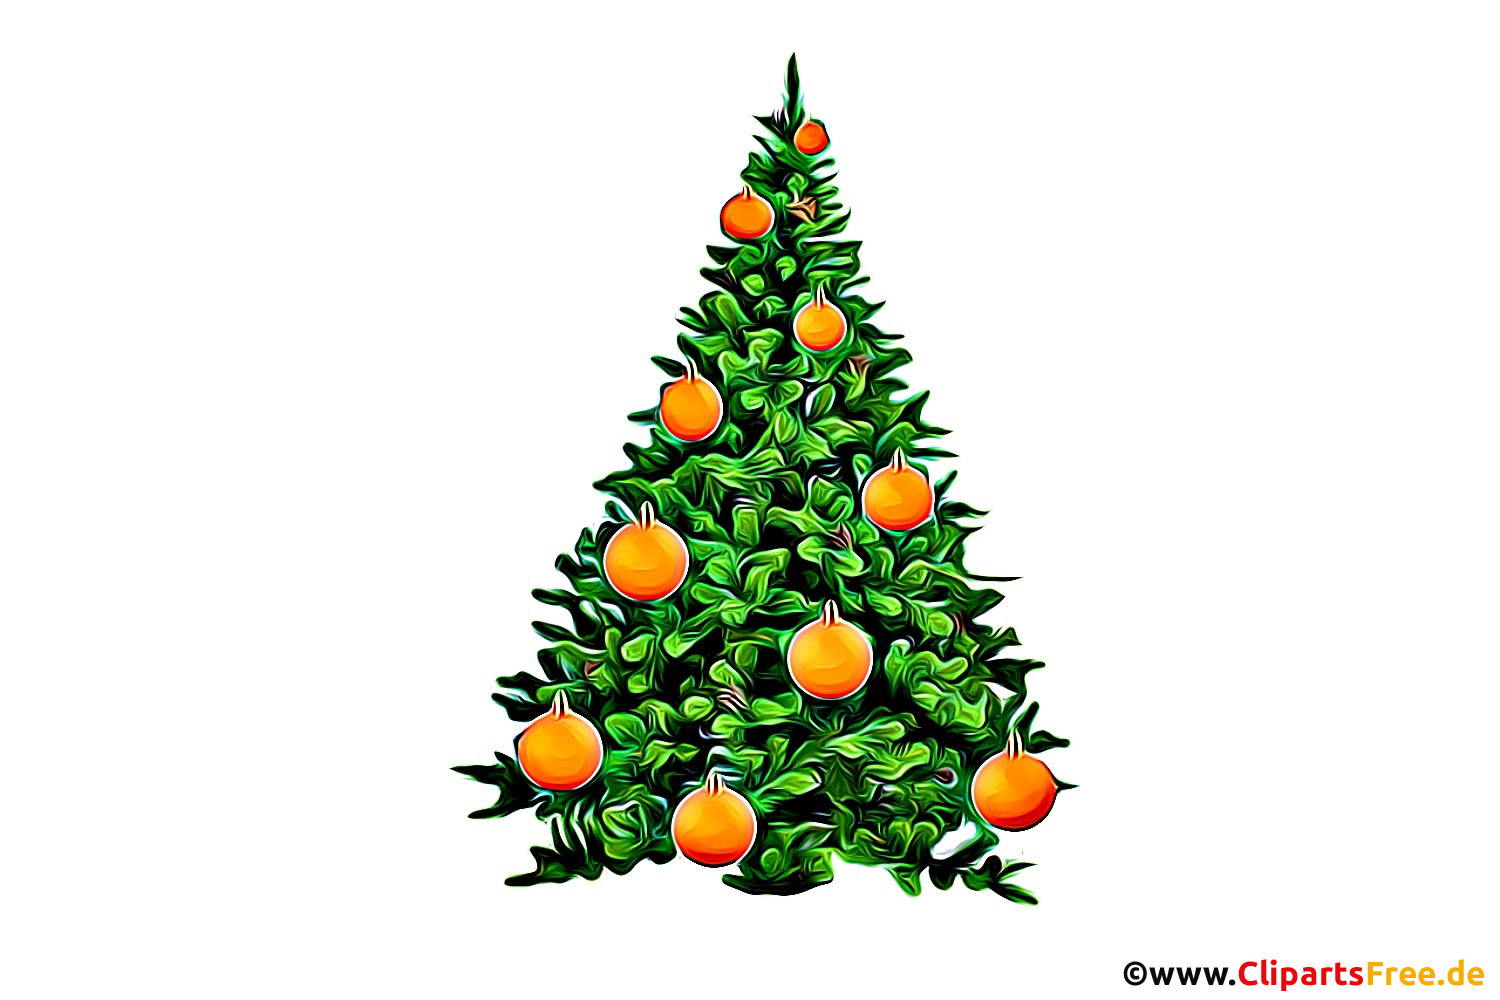 Christmas tree na pinalamutian ng mga orange na ilustrasyon, larawan